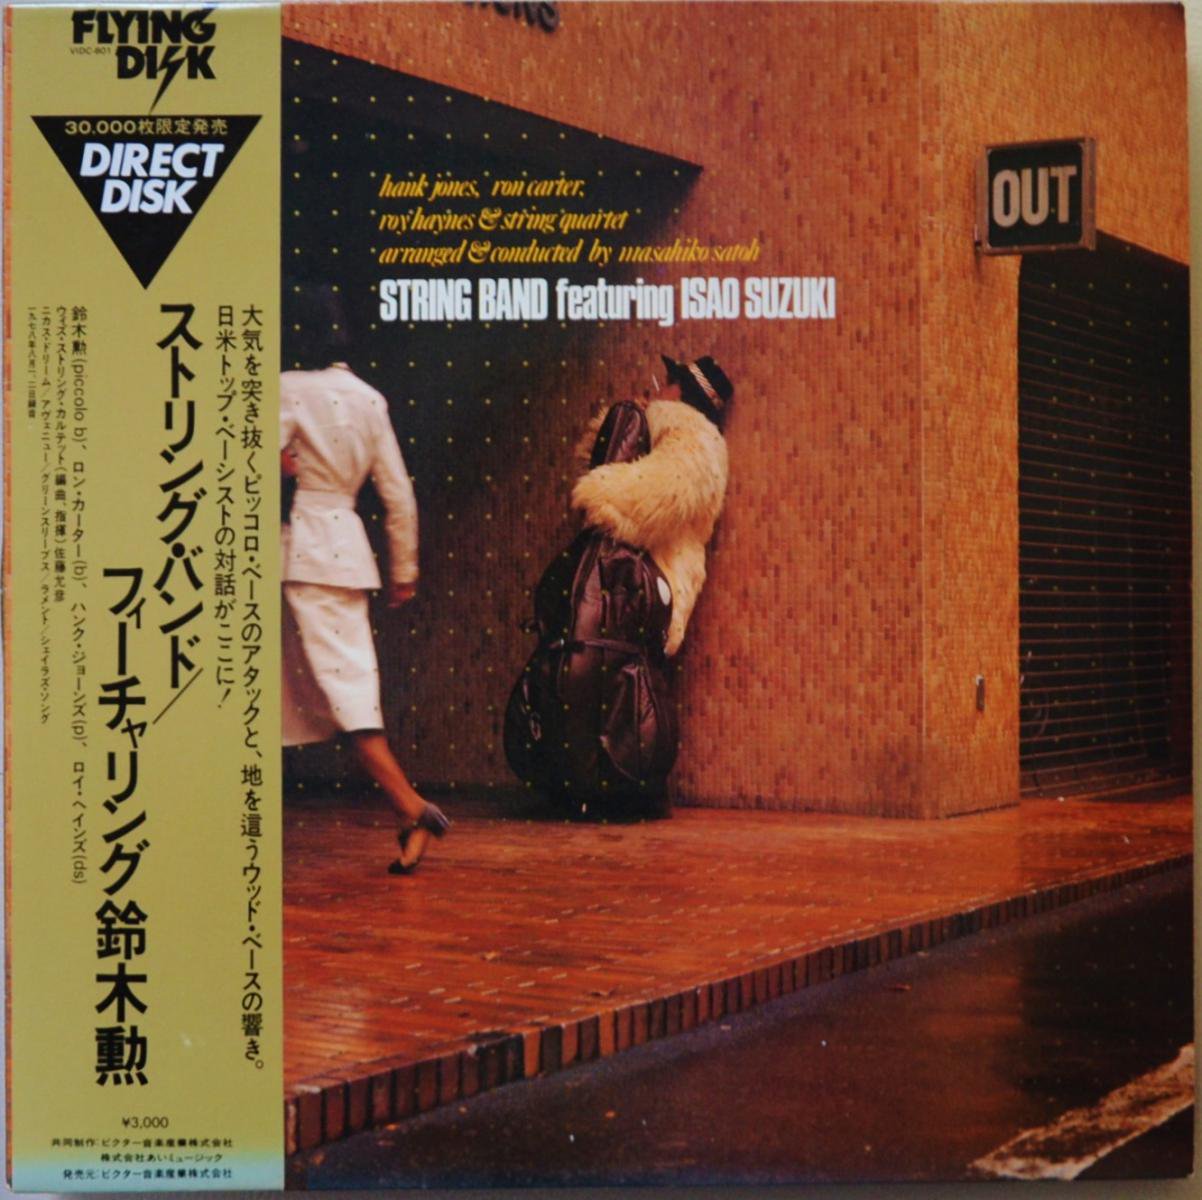 ストリング・バンド・フューチャリング 鈴木勲 / STRING BAND featuring  ISAO SUZUKI (LP)